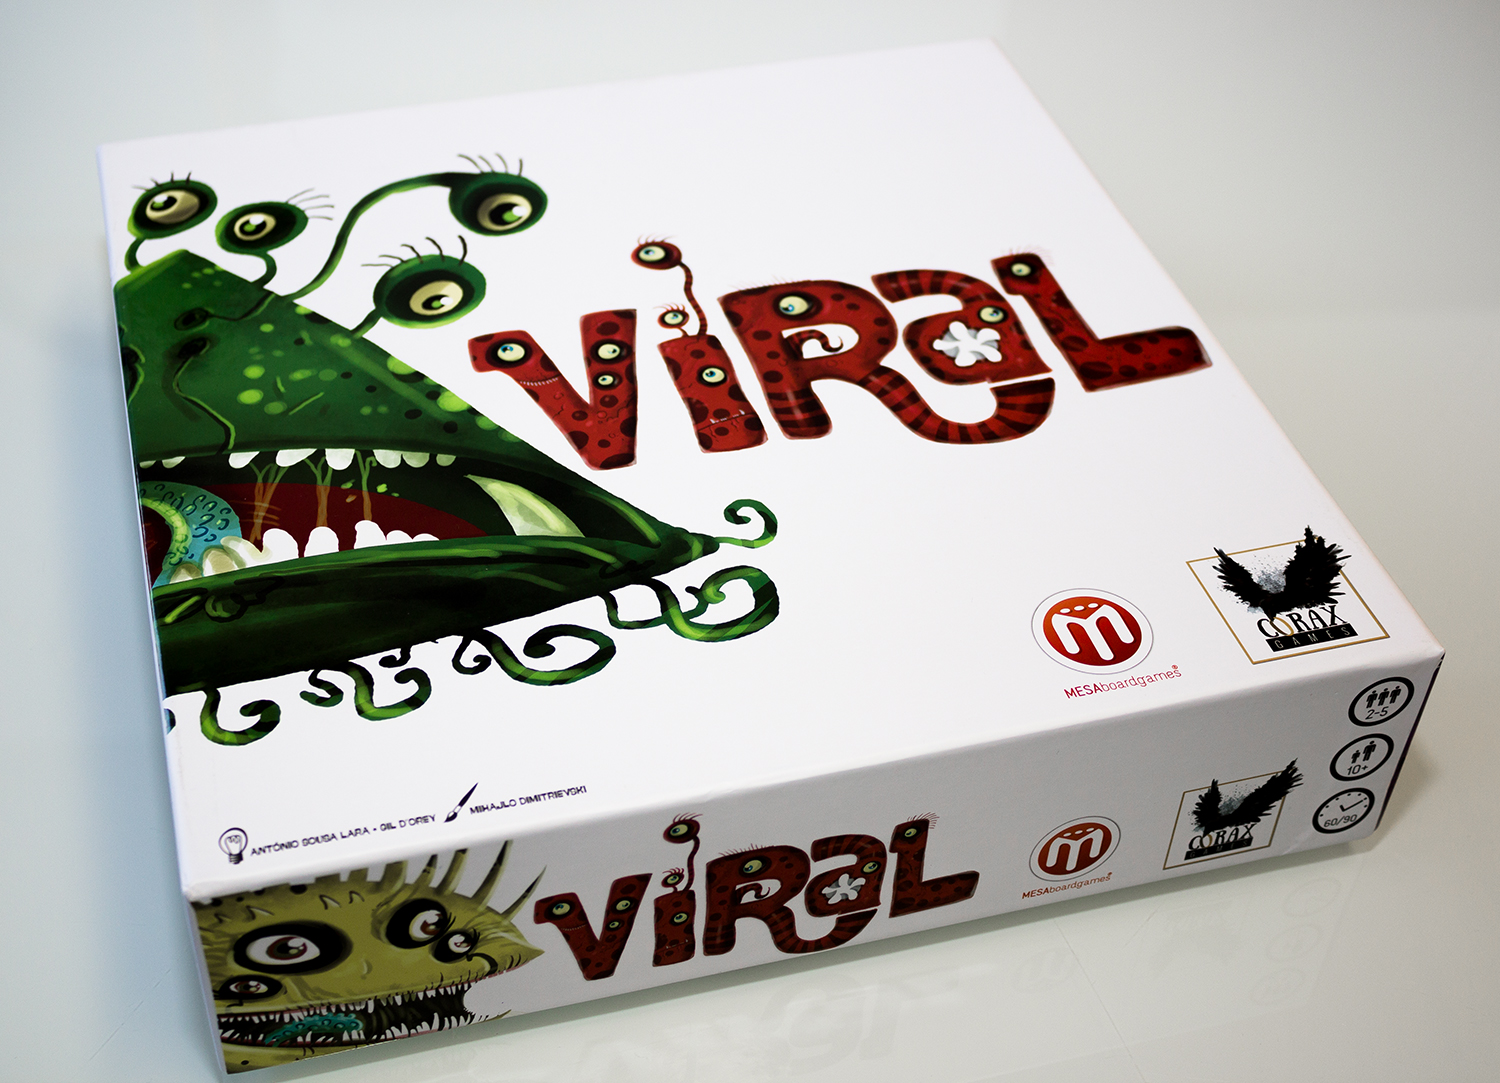 Viral – Das Brettspiel der Vieren im Test